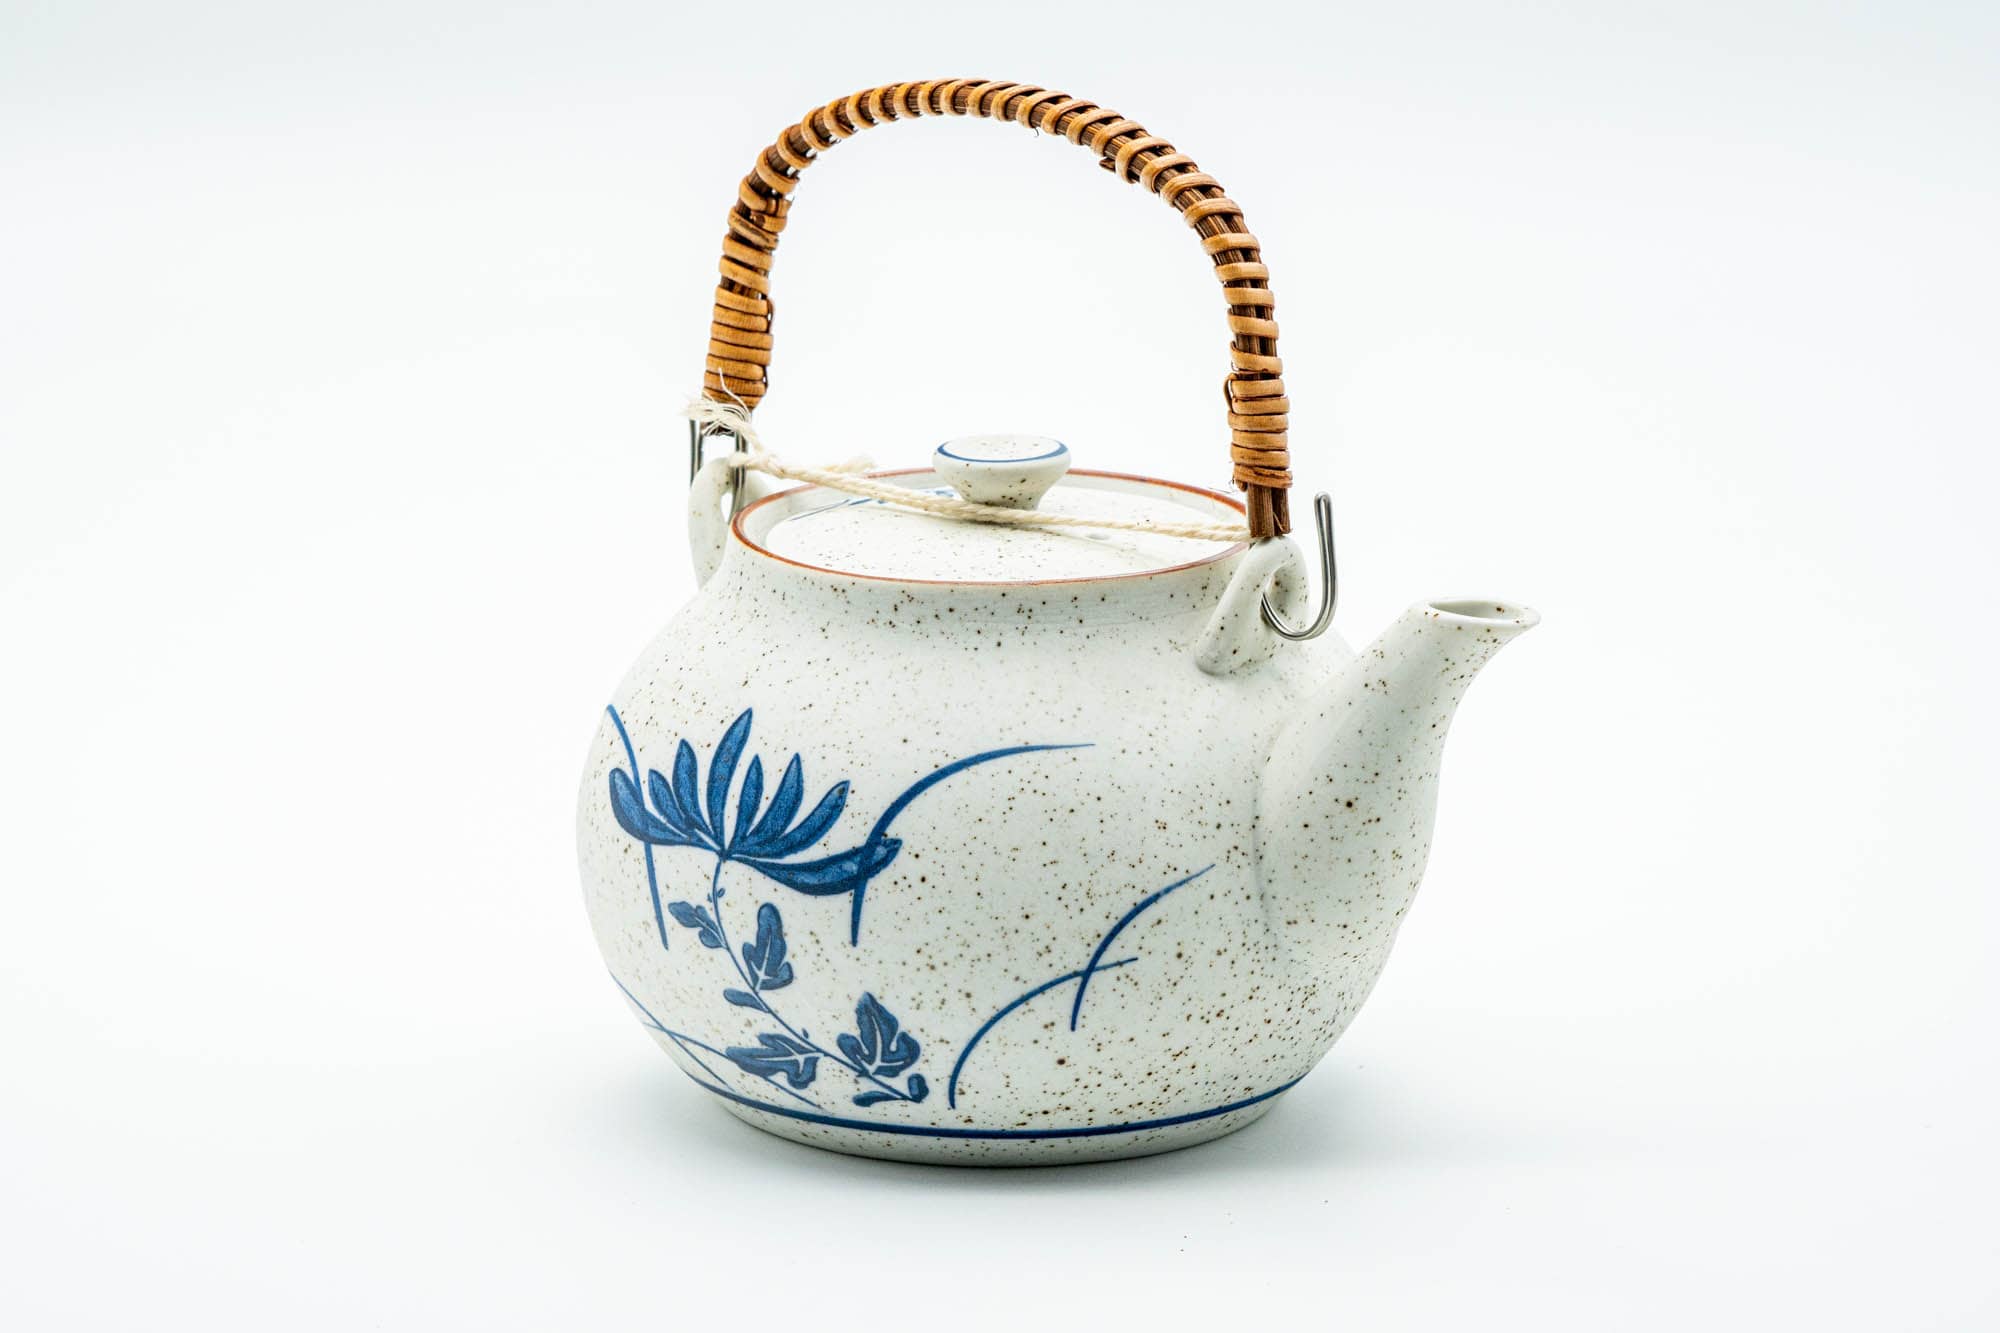 Japanese Dobin - Blue Floral White Textured Arita-yaki Porcelain Teapot - 500ml